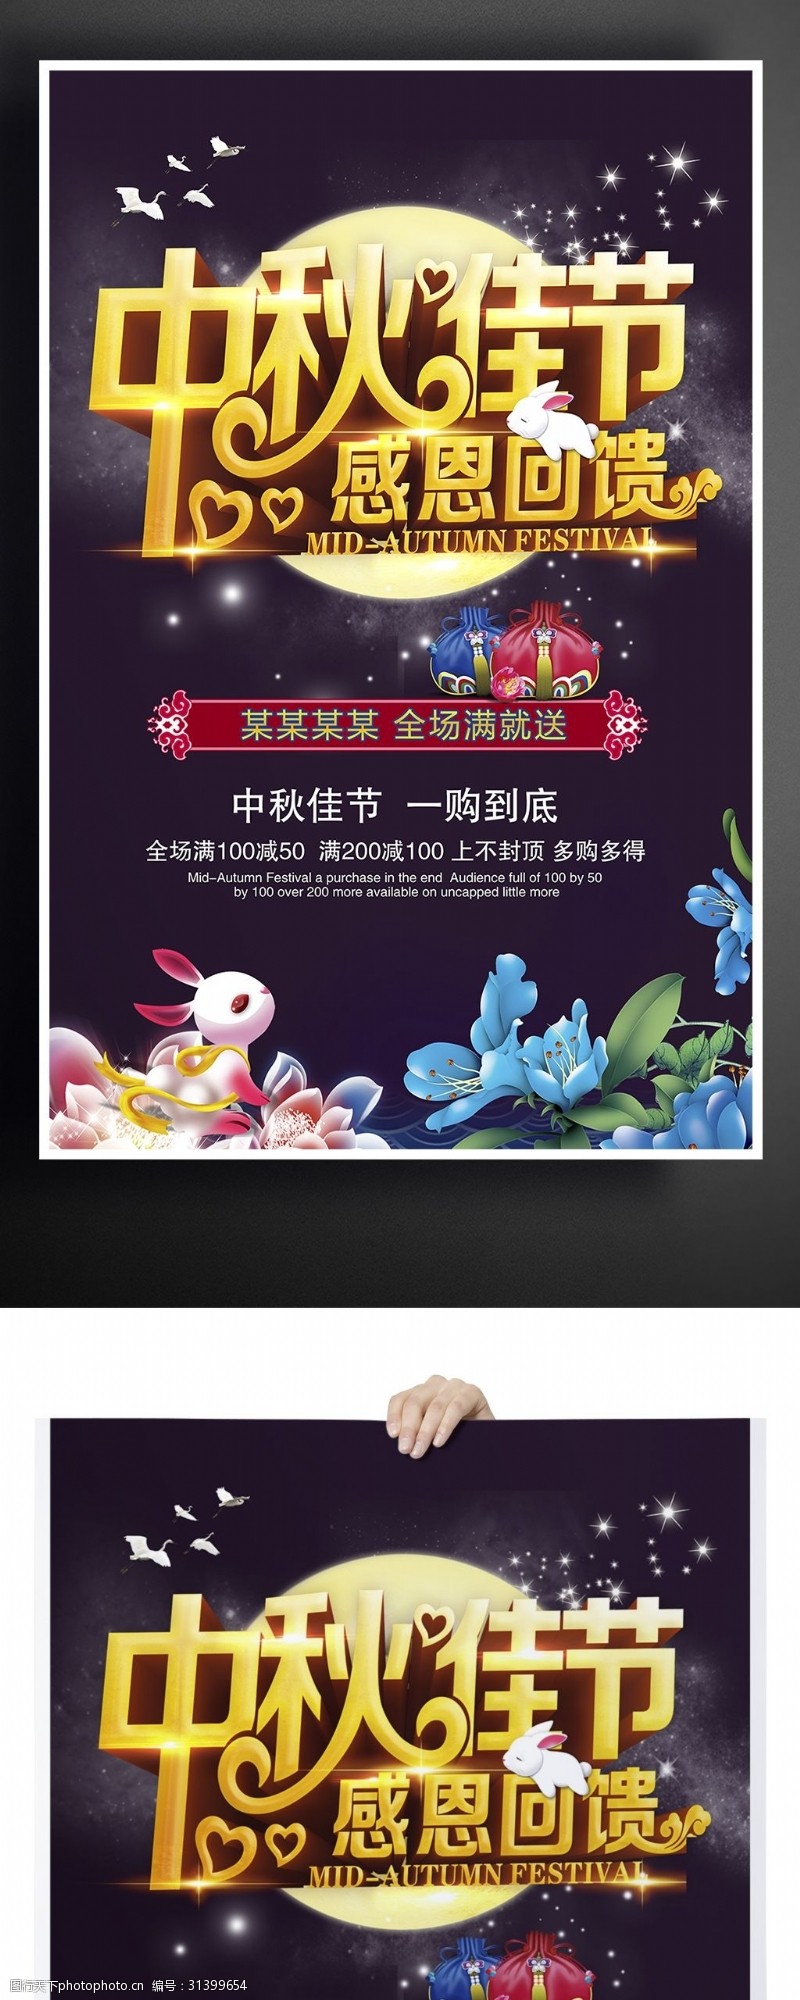 中国传统节日中秋钜惠促销活动海报通用模板